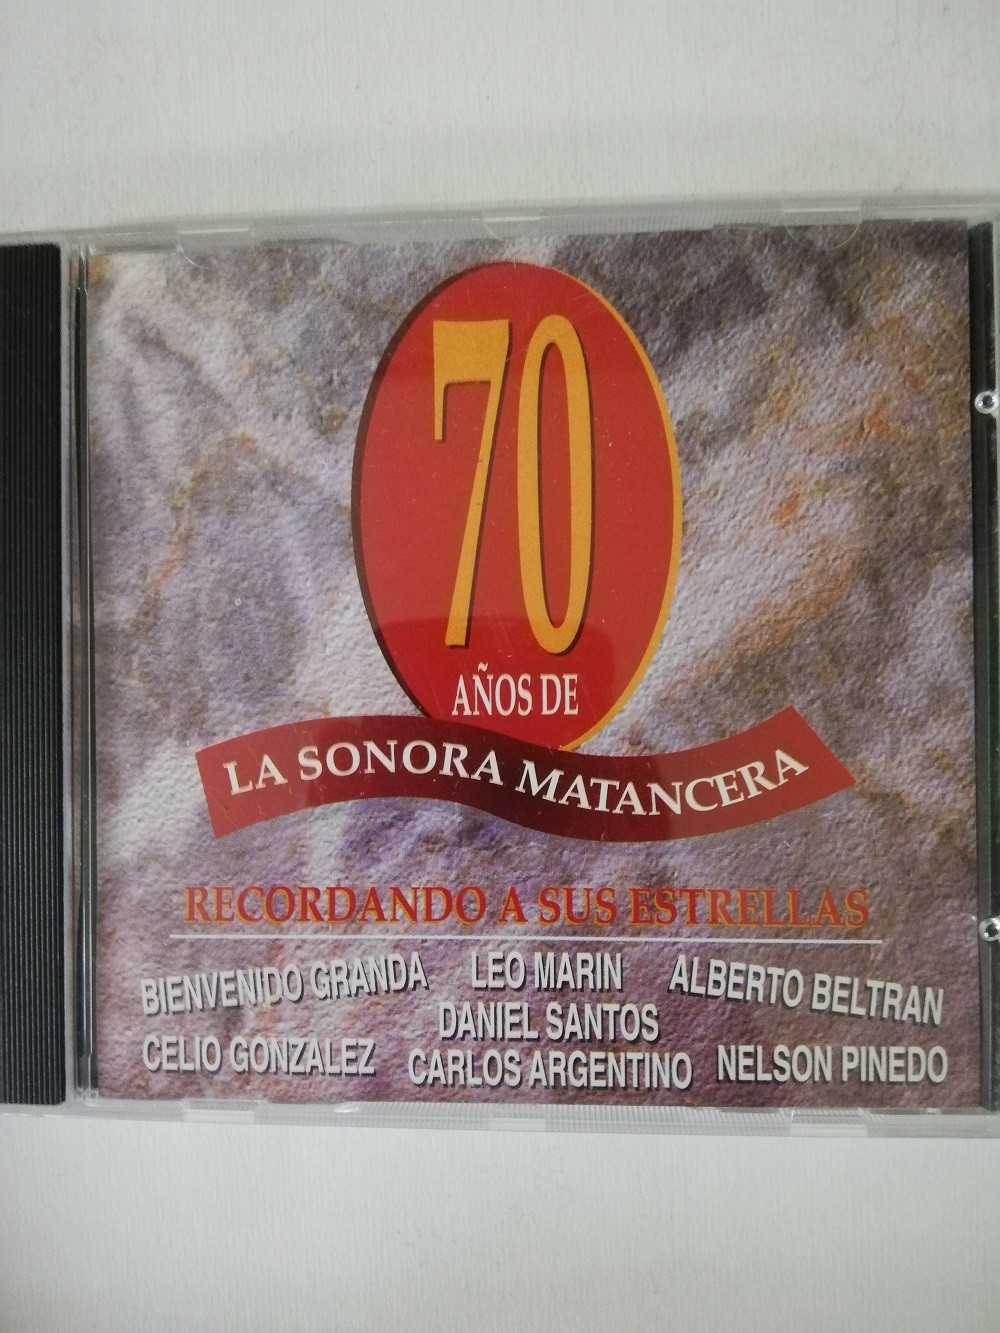 Imagen CD LA SONORA MATANCERA - 70 AÑOS DE LA SONORA MATANCERA  1